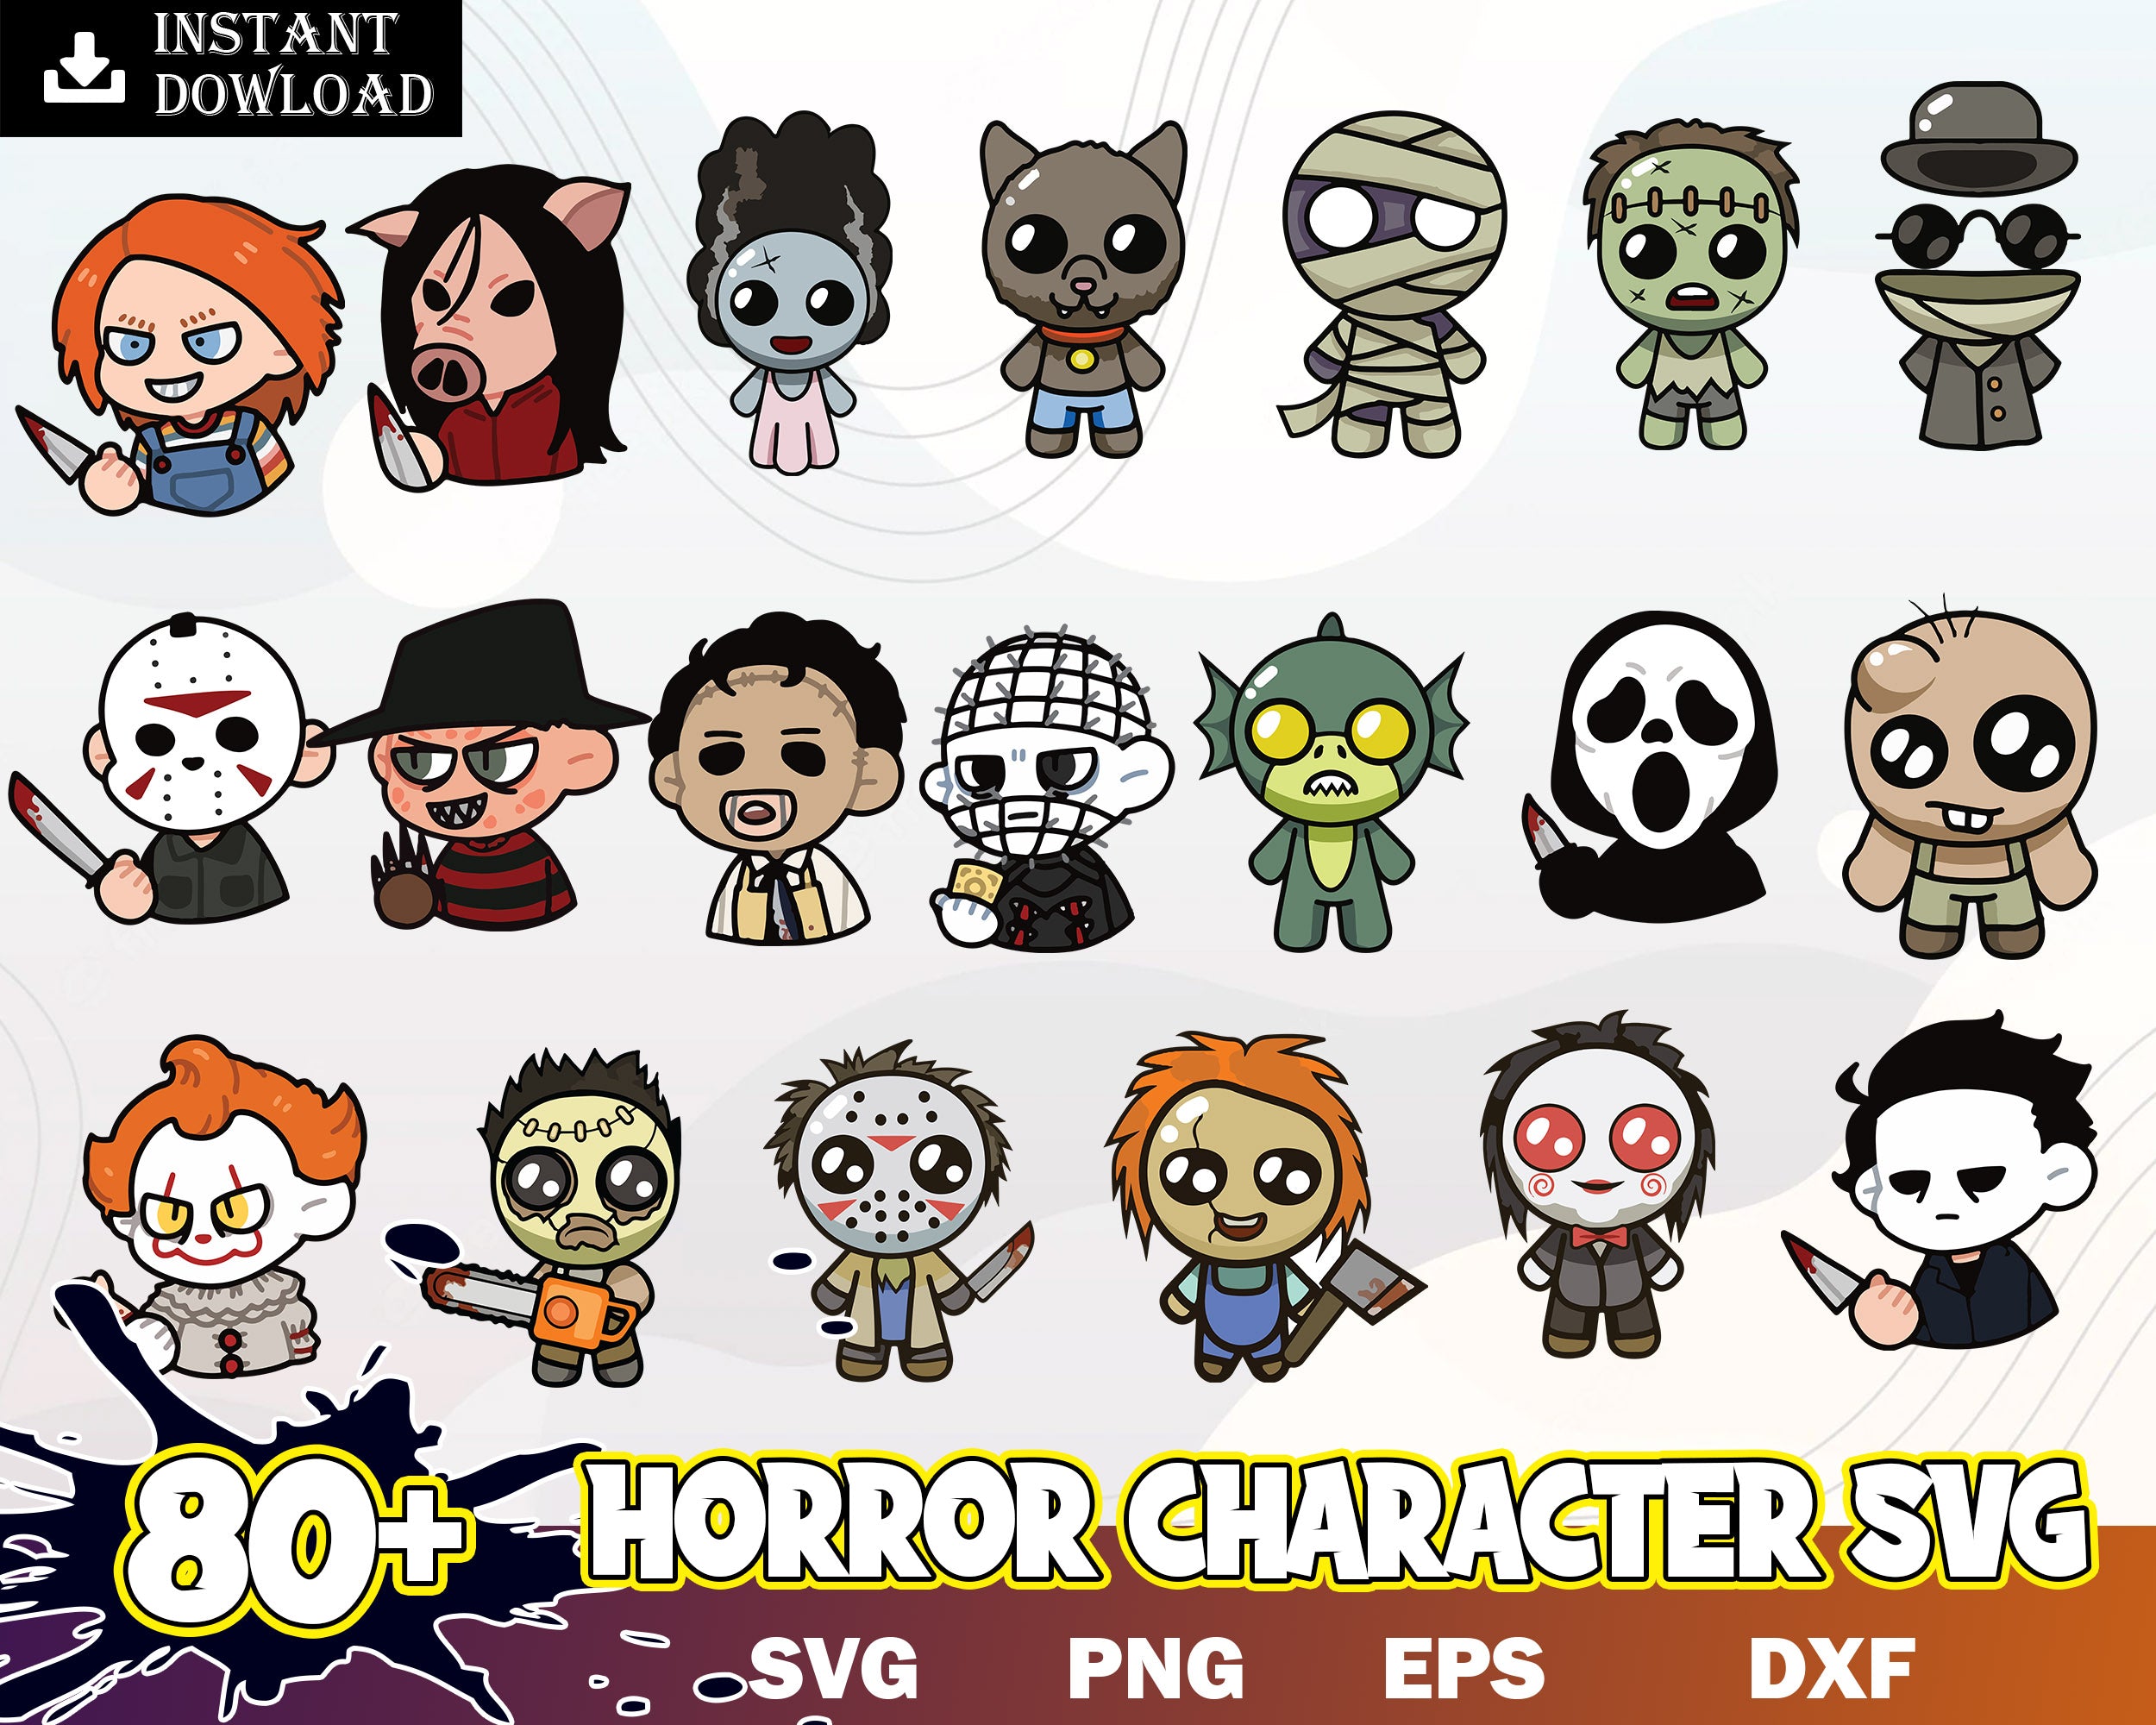 80+ Horror Characters SVG Bundle, Cartoon Horror Bundle png, svg, eps, dxf files, Digital download.